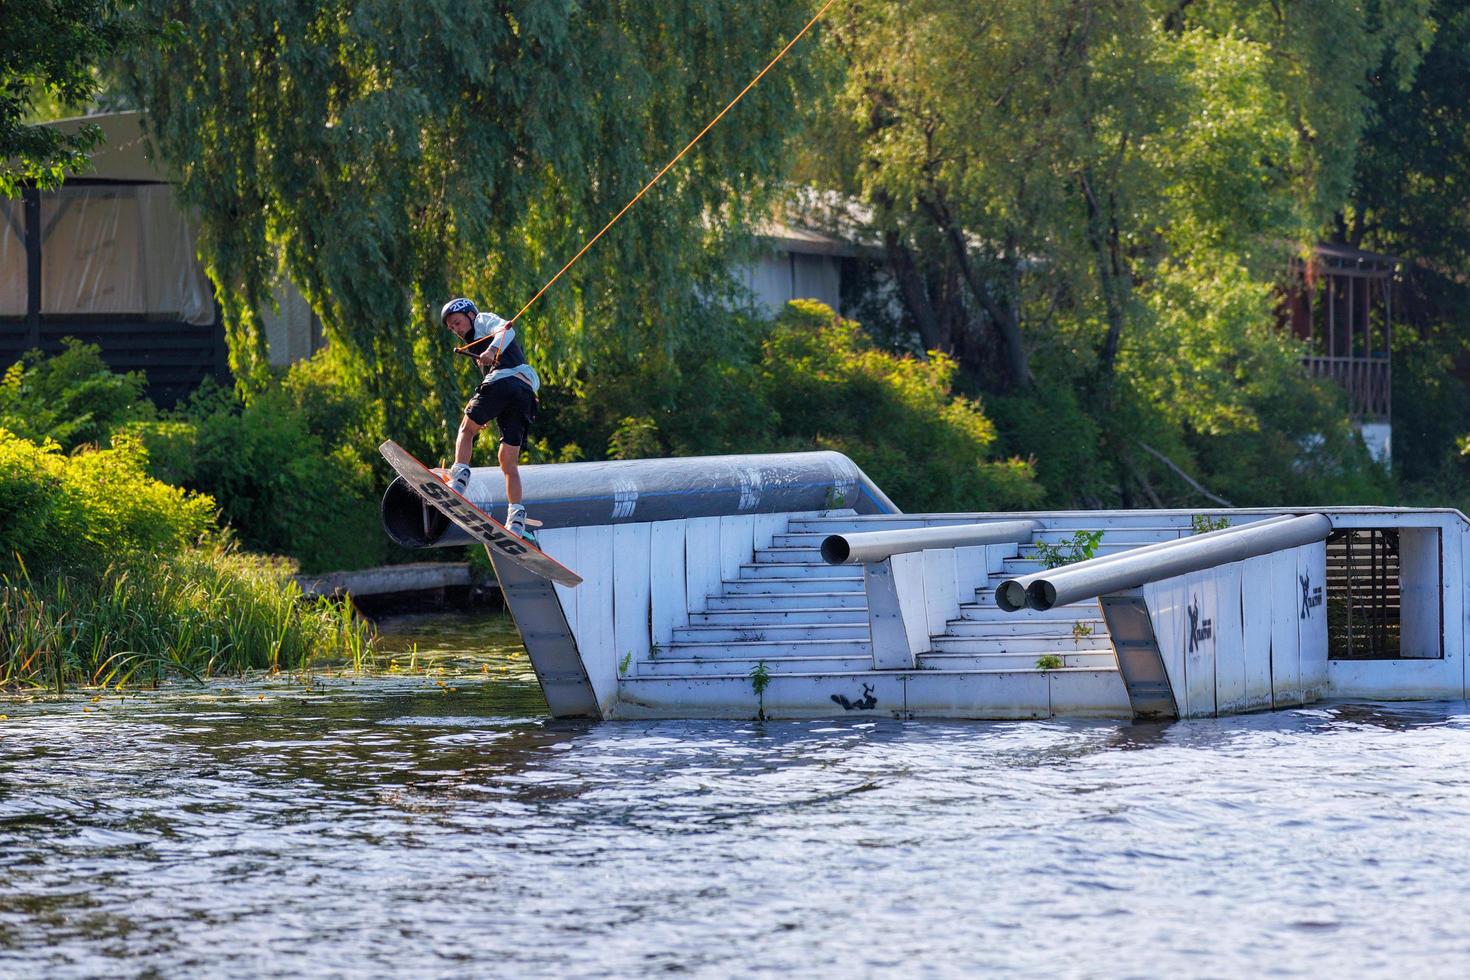 Kyiv Ucrania. 19 de junio de 2022. El atleta wakeboarder salta de un trampolín a la superficie del agua en un día de verano. foto